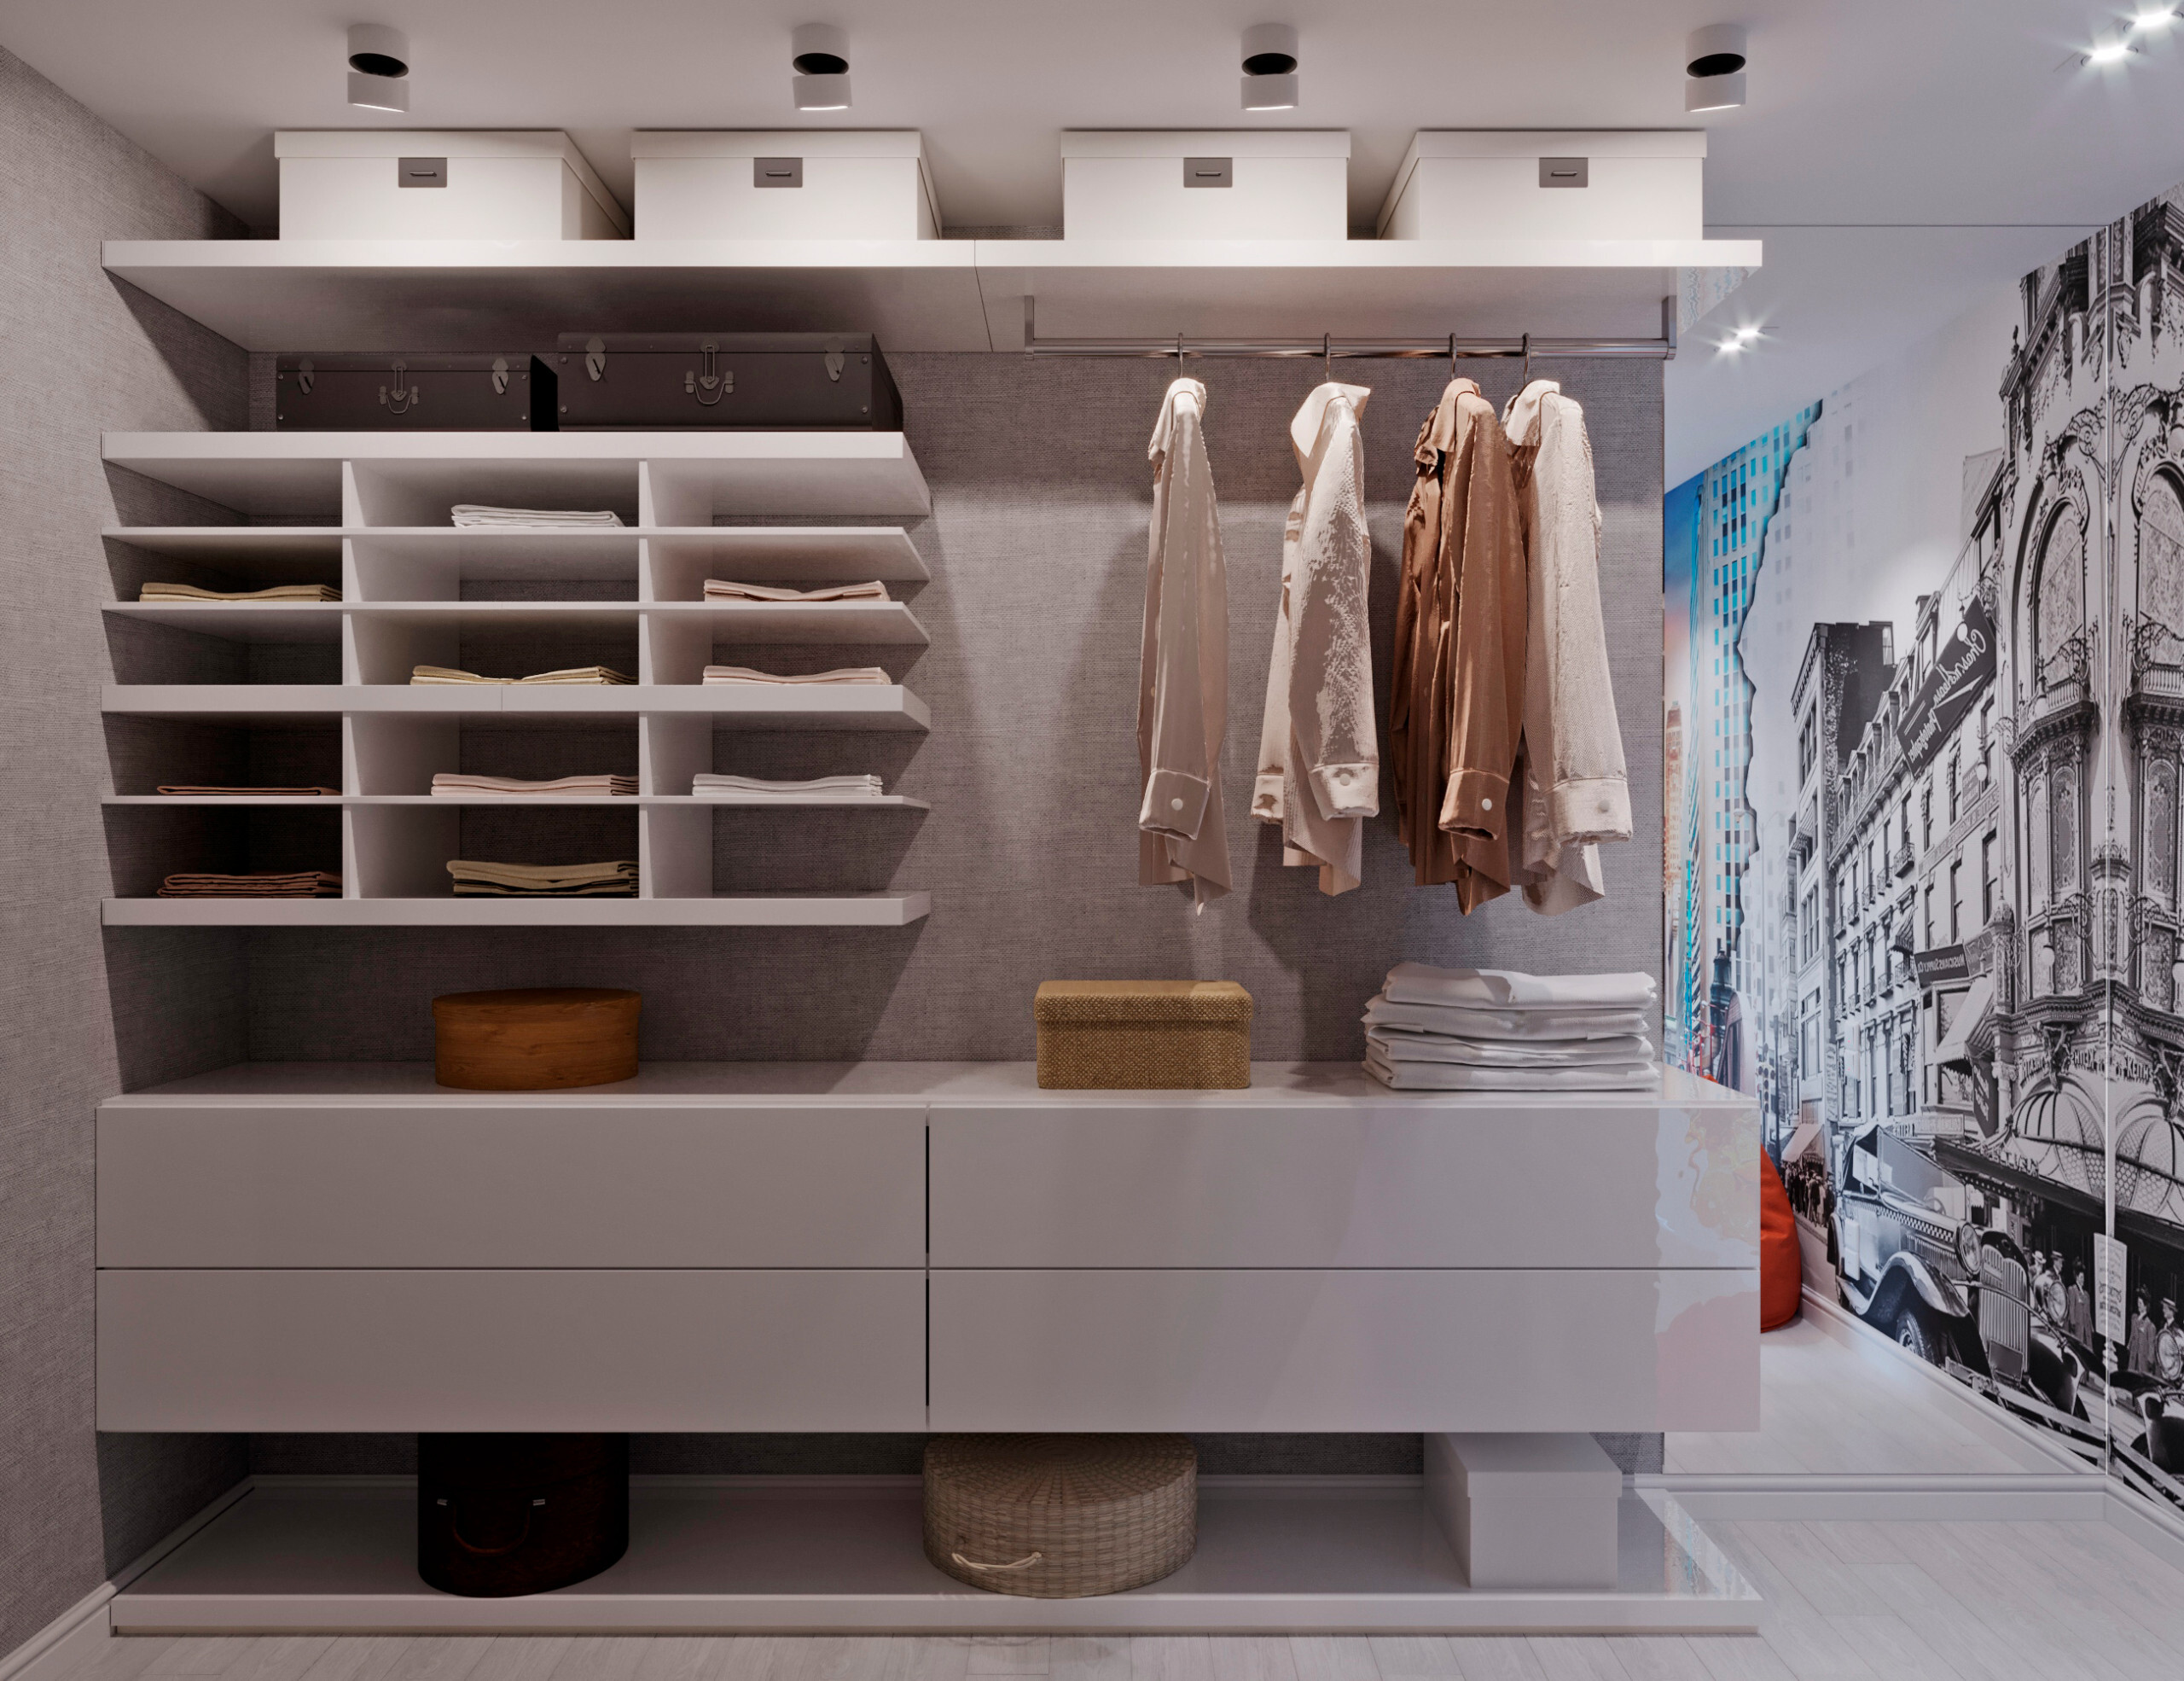 Интерьер гардеробной с гардеробной, проходной, кладовкой, гардеробной со шторой и гардеробной зой кроватью